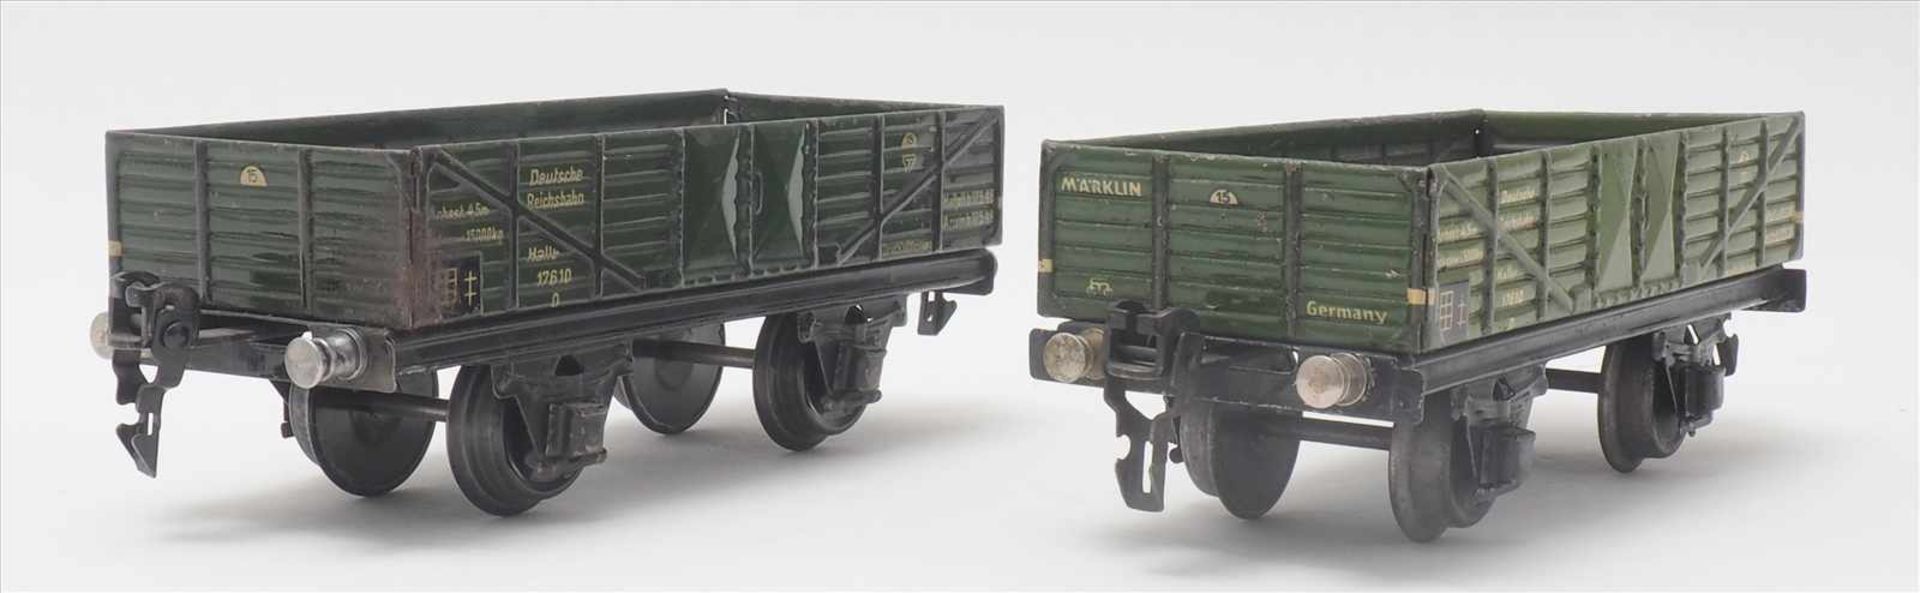 Zwei GüterwagenMärklin Spur 0. 1930-er Jahre. Niederbordwagen in grün. Guter, altersbedingter